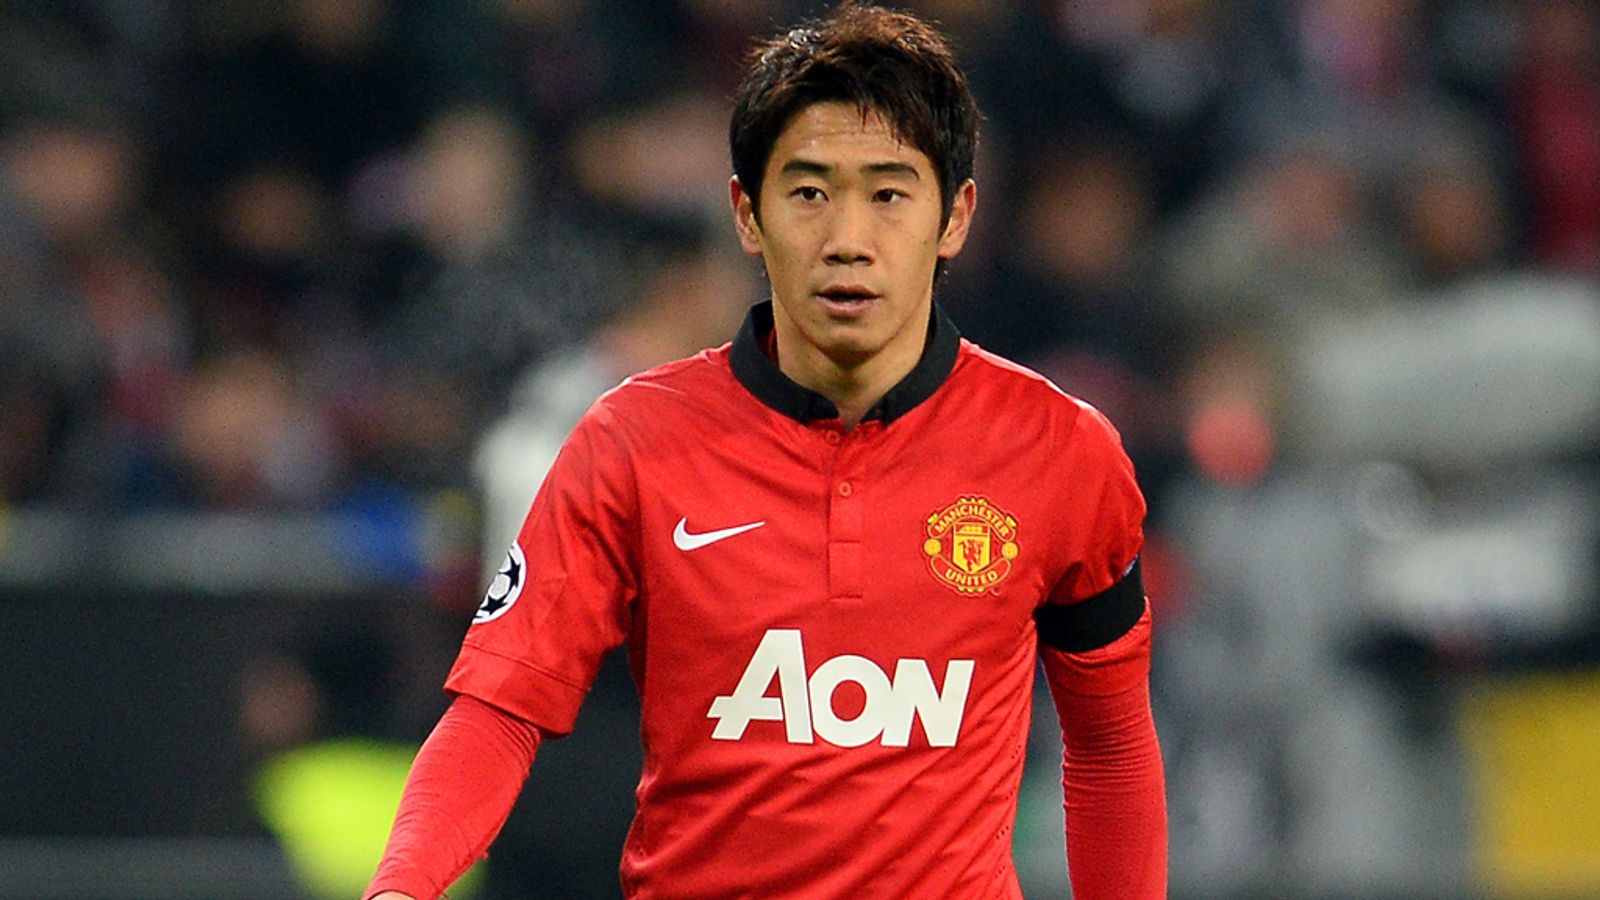 Manchester United's Shinji Kagawa hopes to play his way